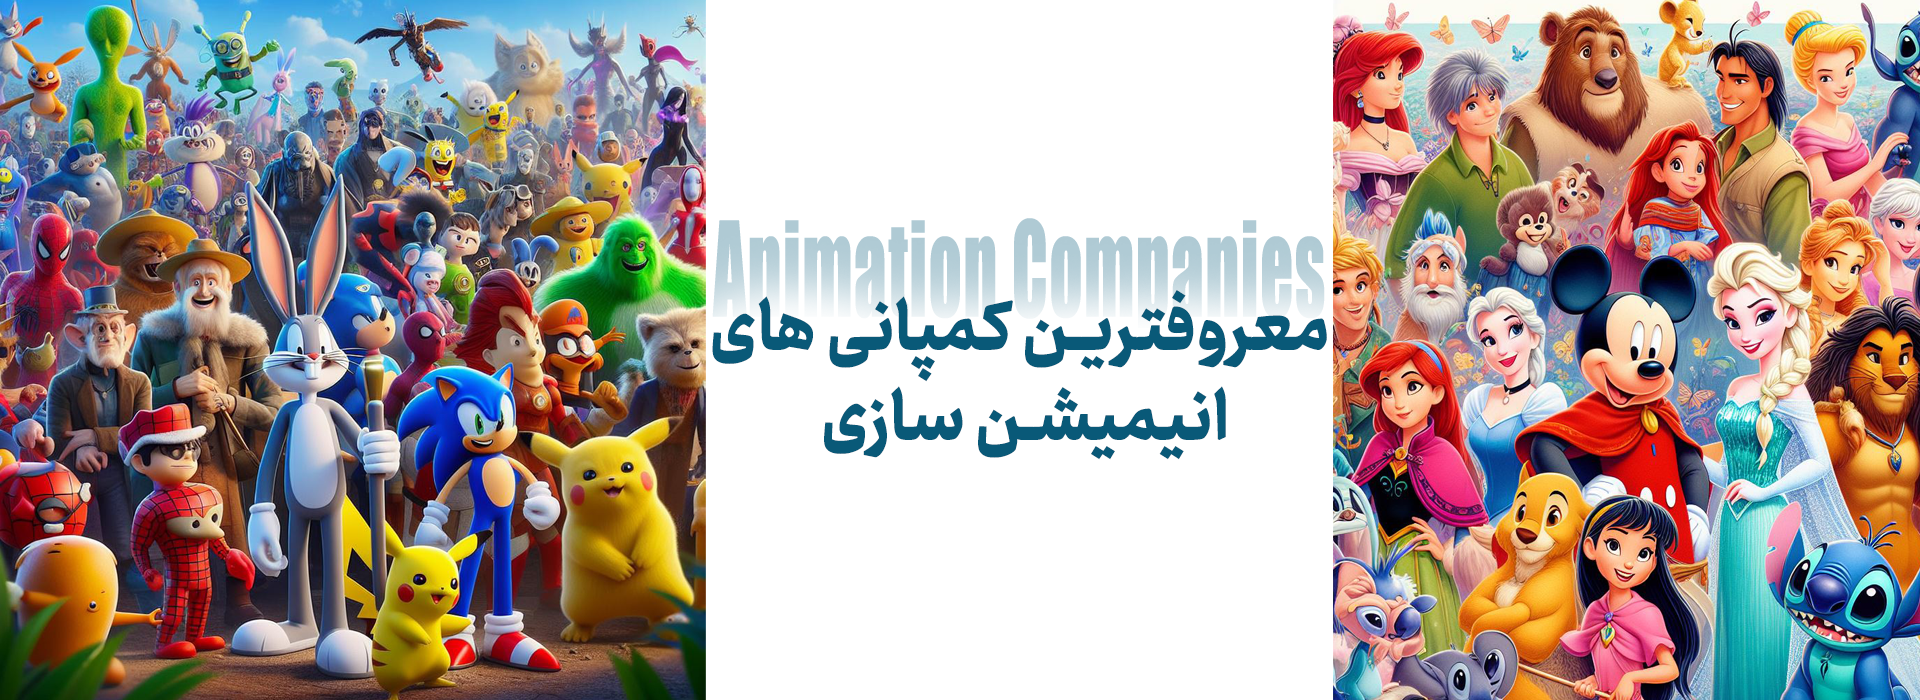 شرکت های معروف انیمیشن سازی